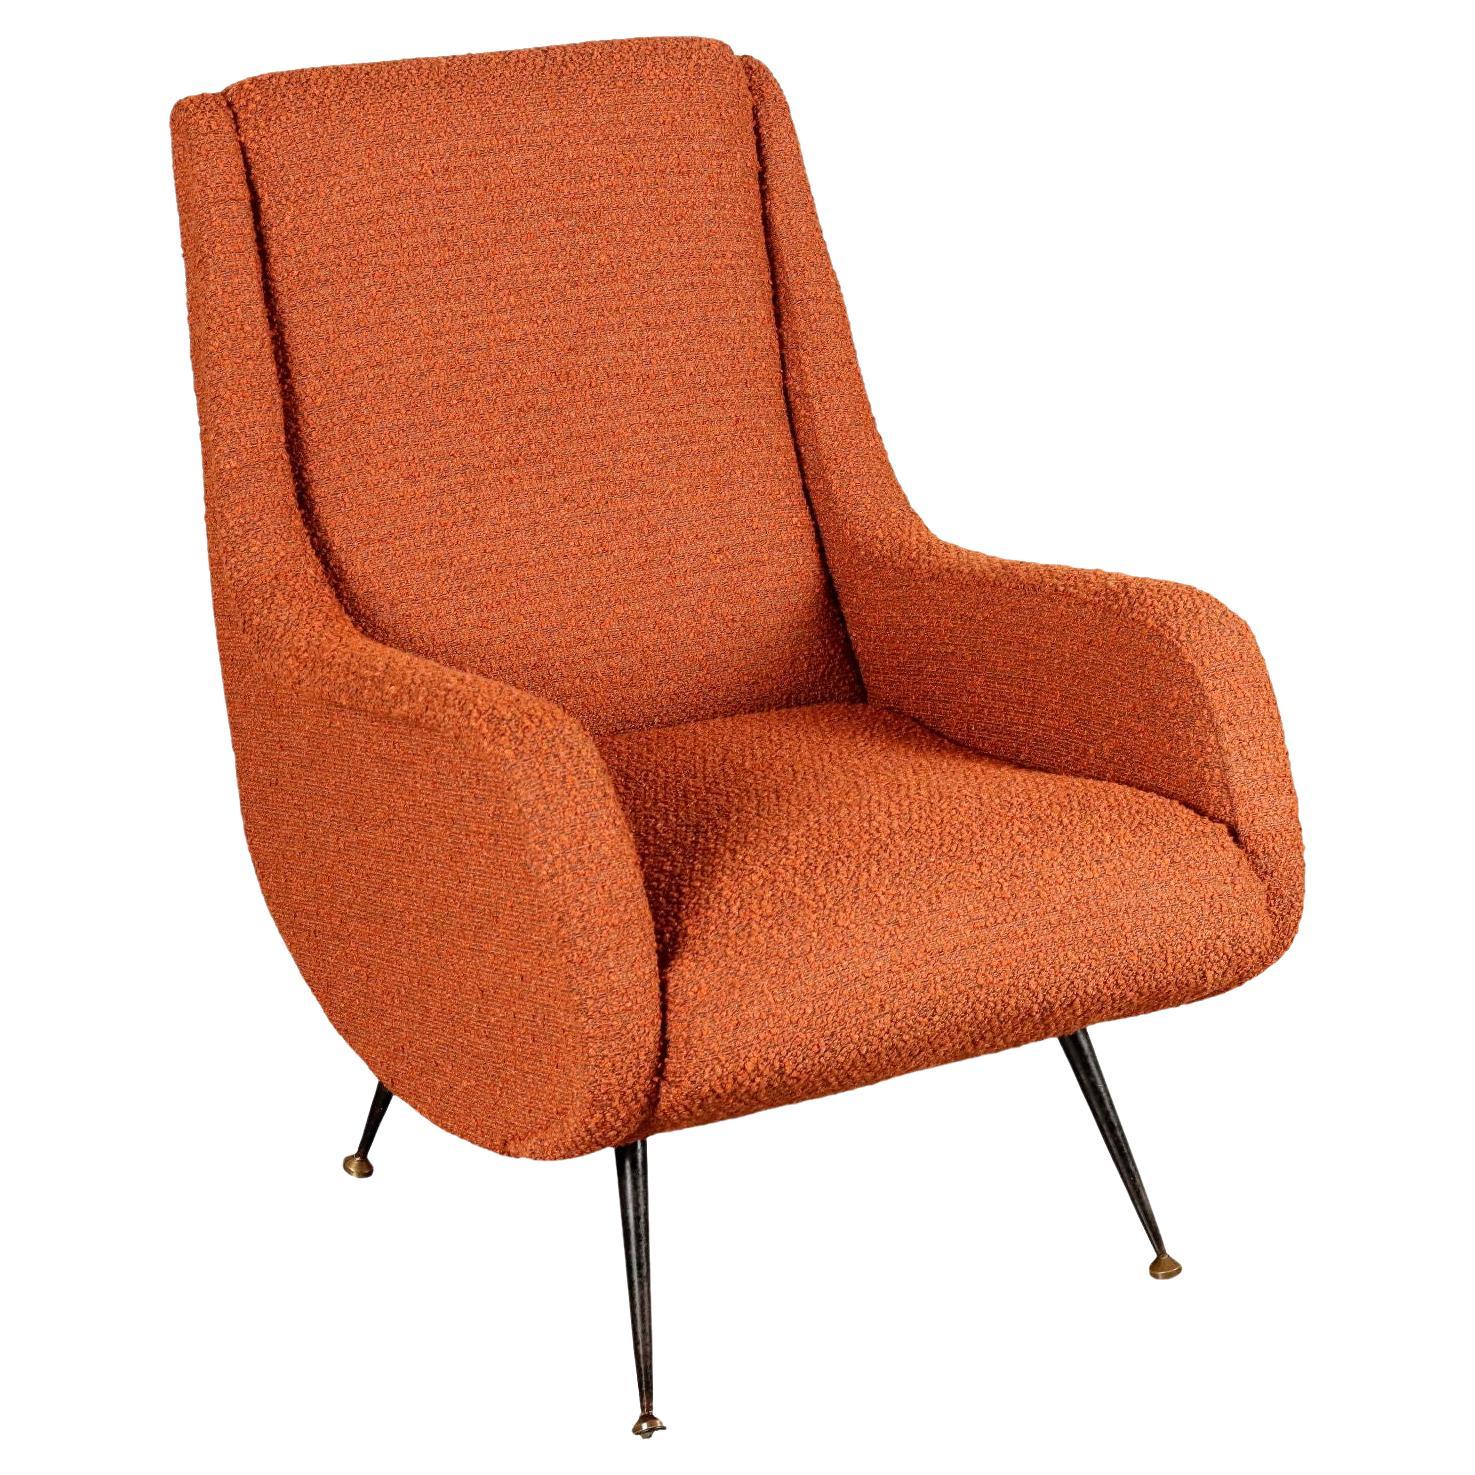 Orange 60s armchair